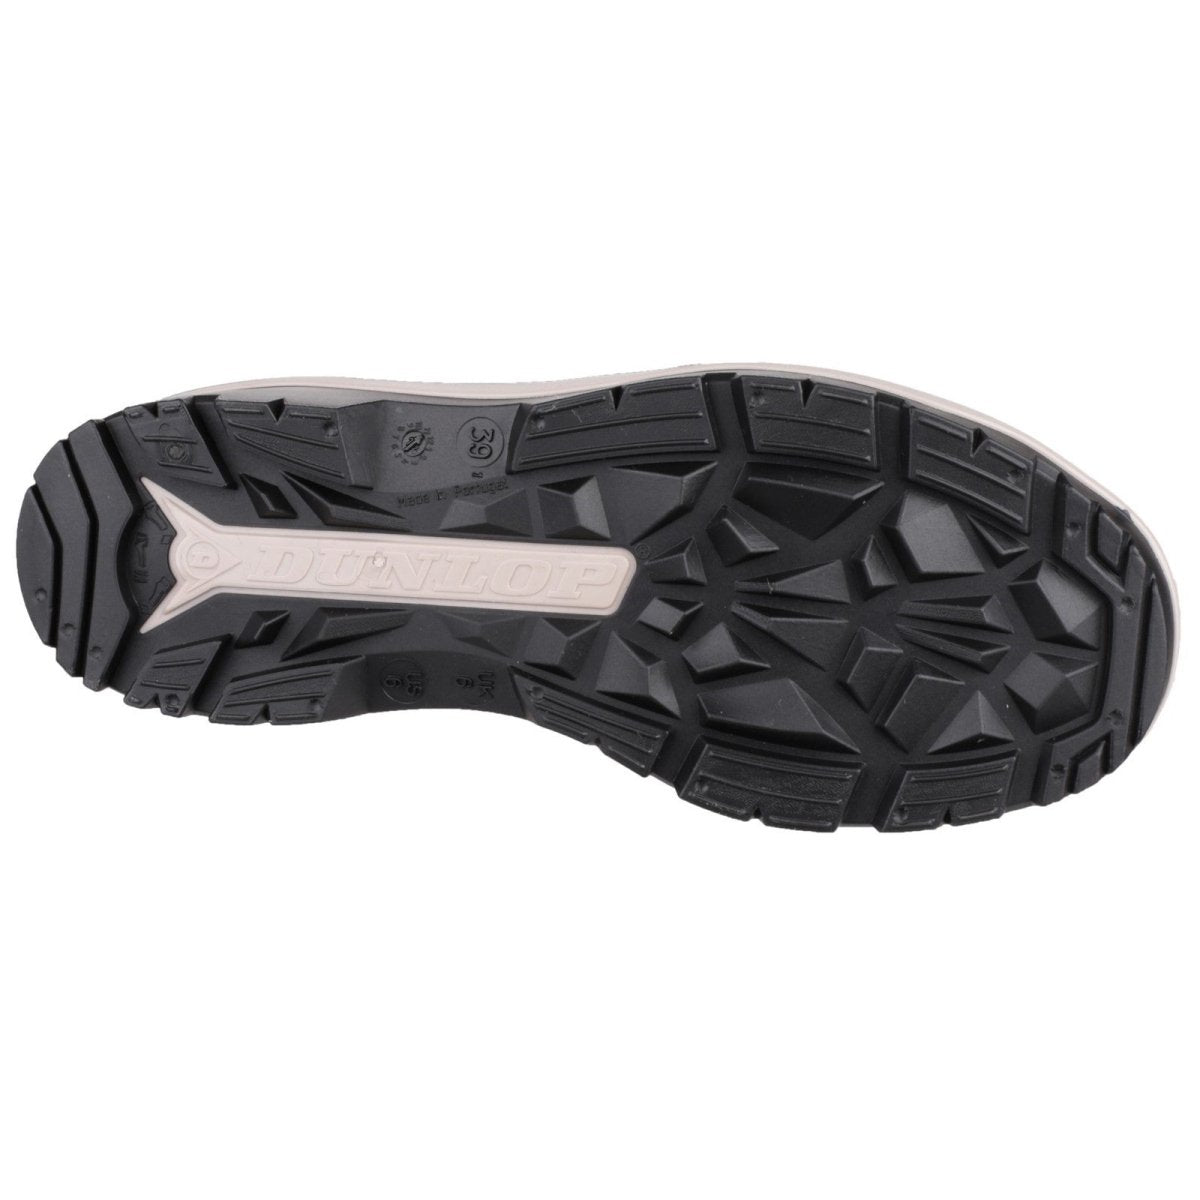 Dunlop Blizzard Warm Waterproof Wellington Boots - Shoe Store Direct